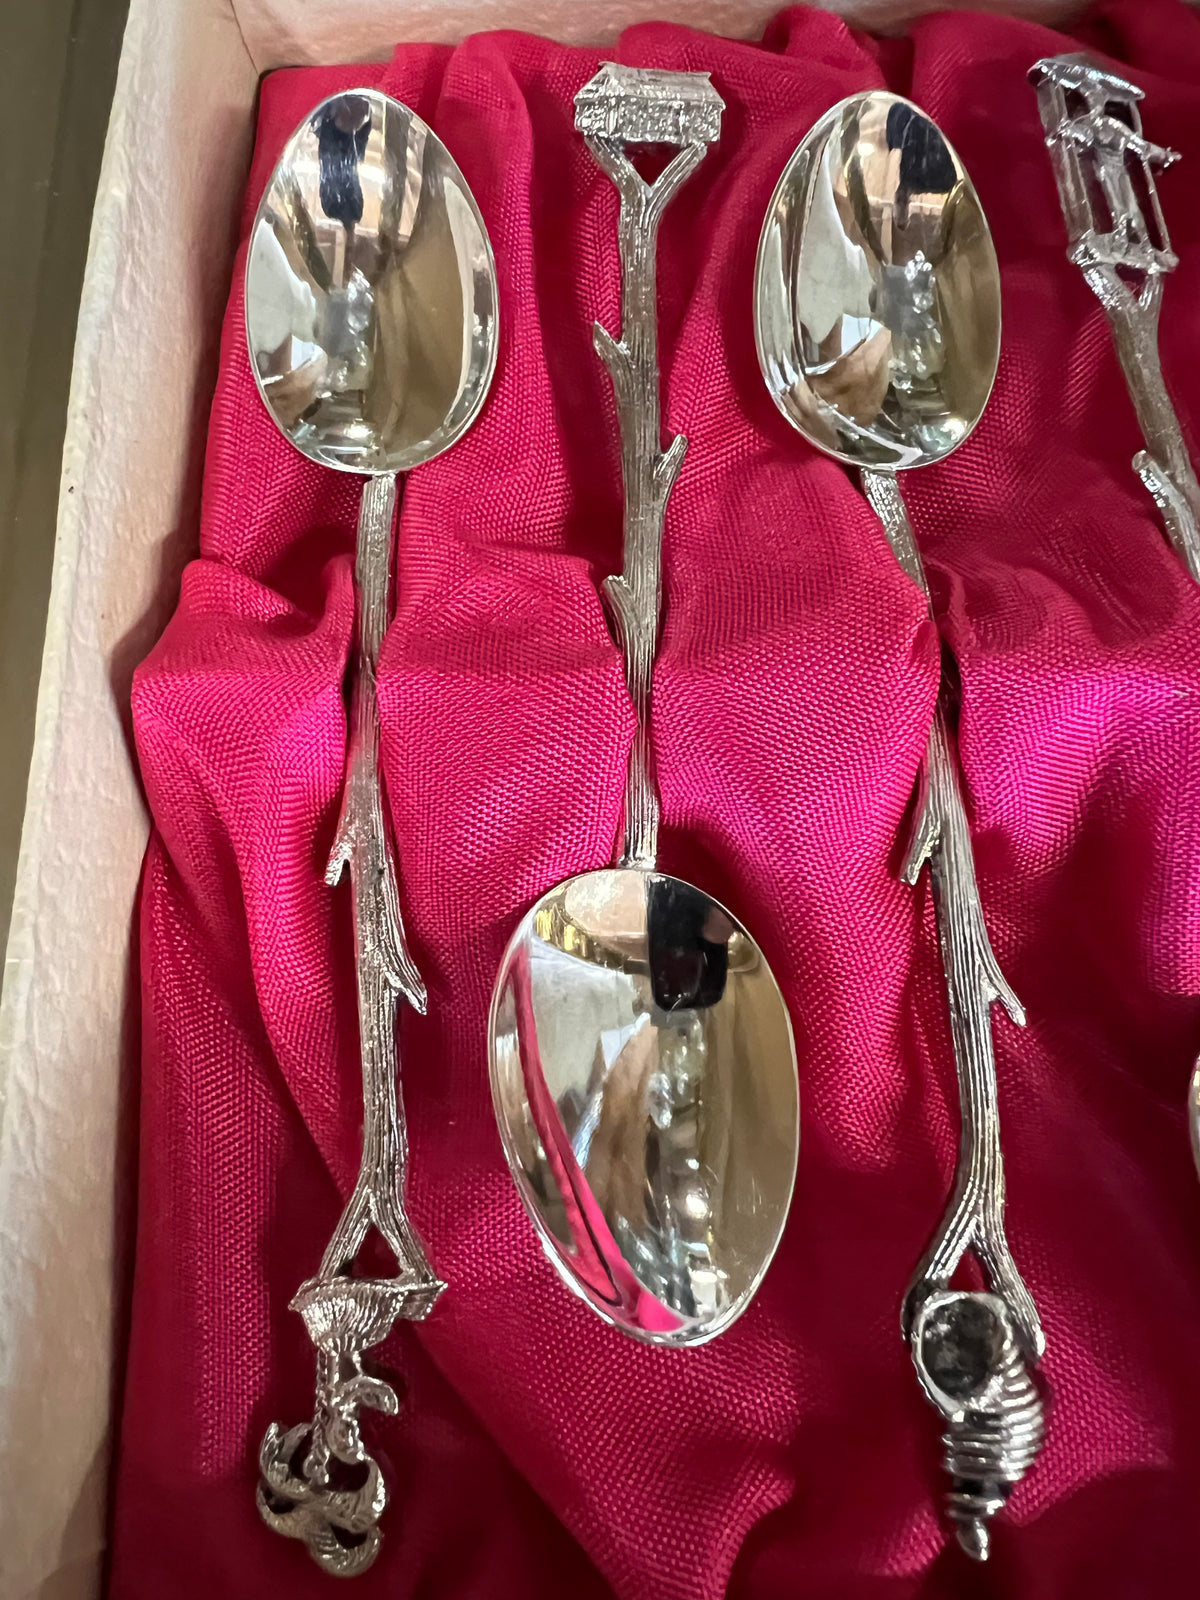 Demitasse Spoons, Asian tropical motif